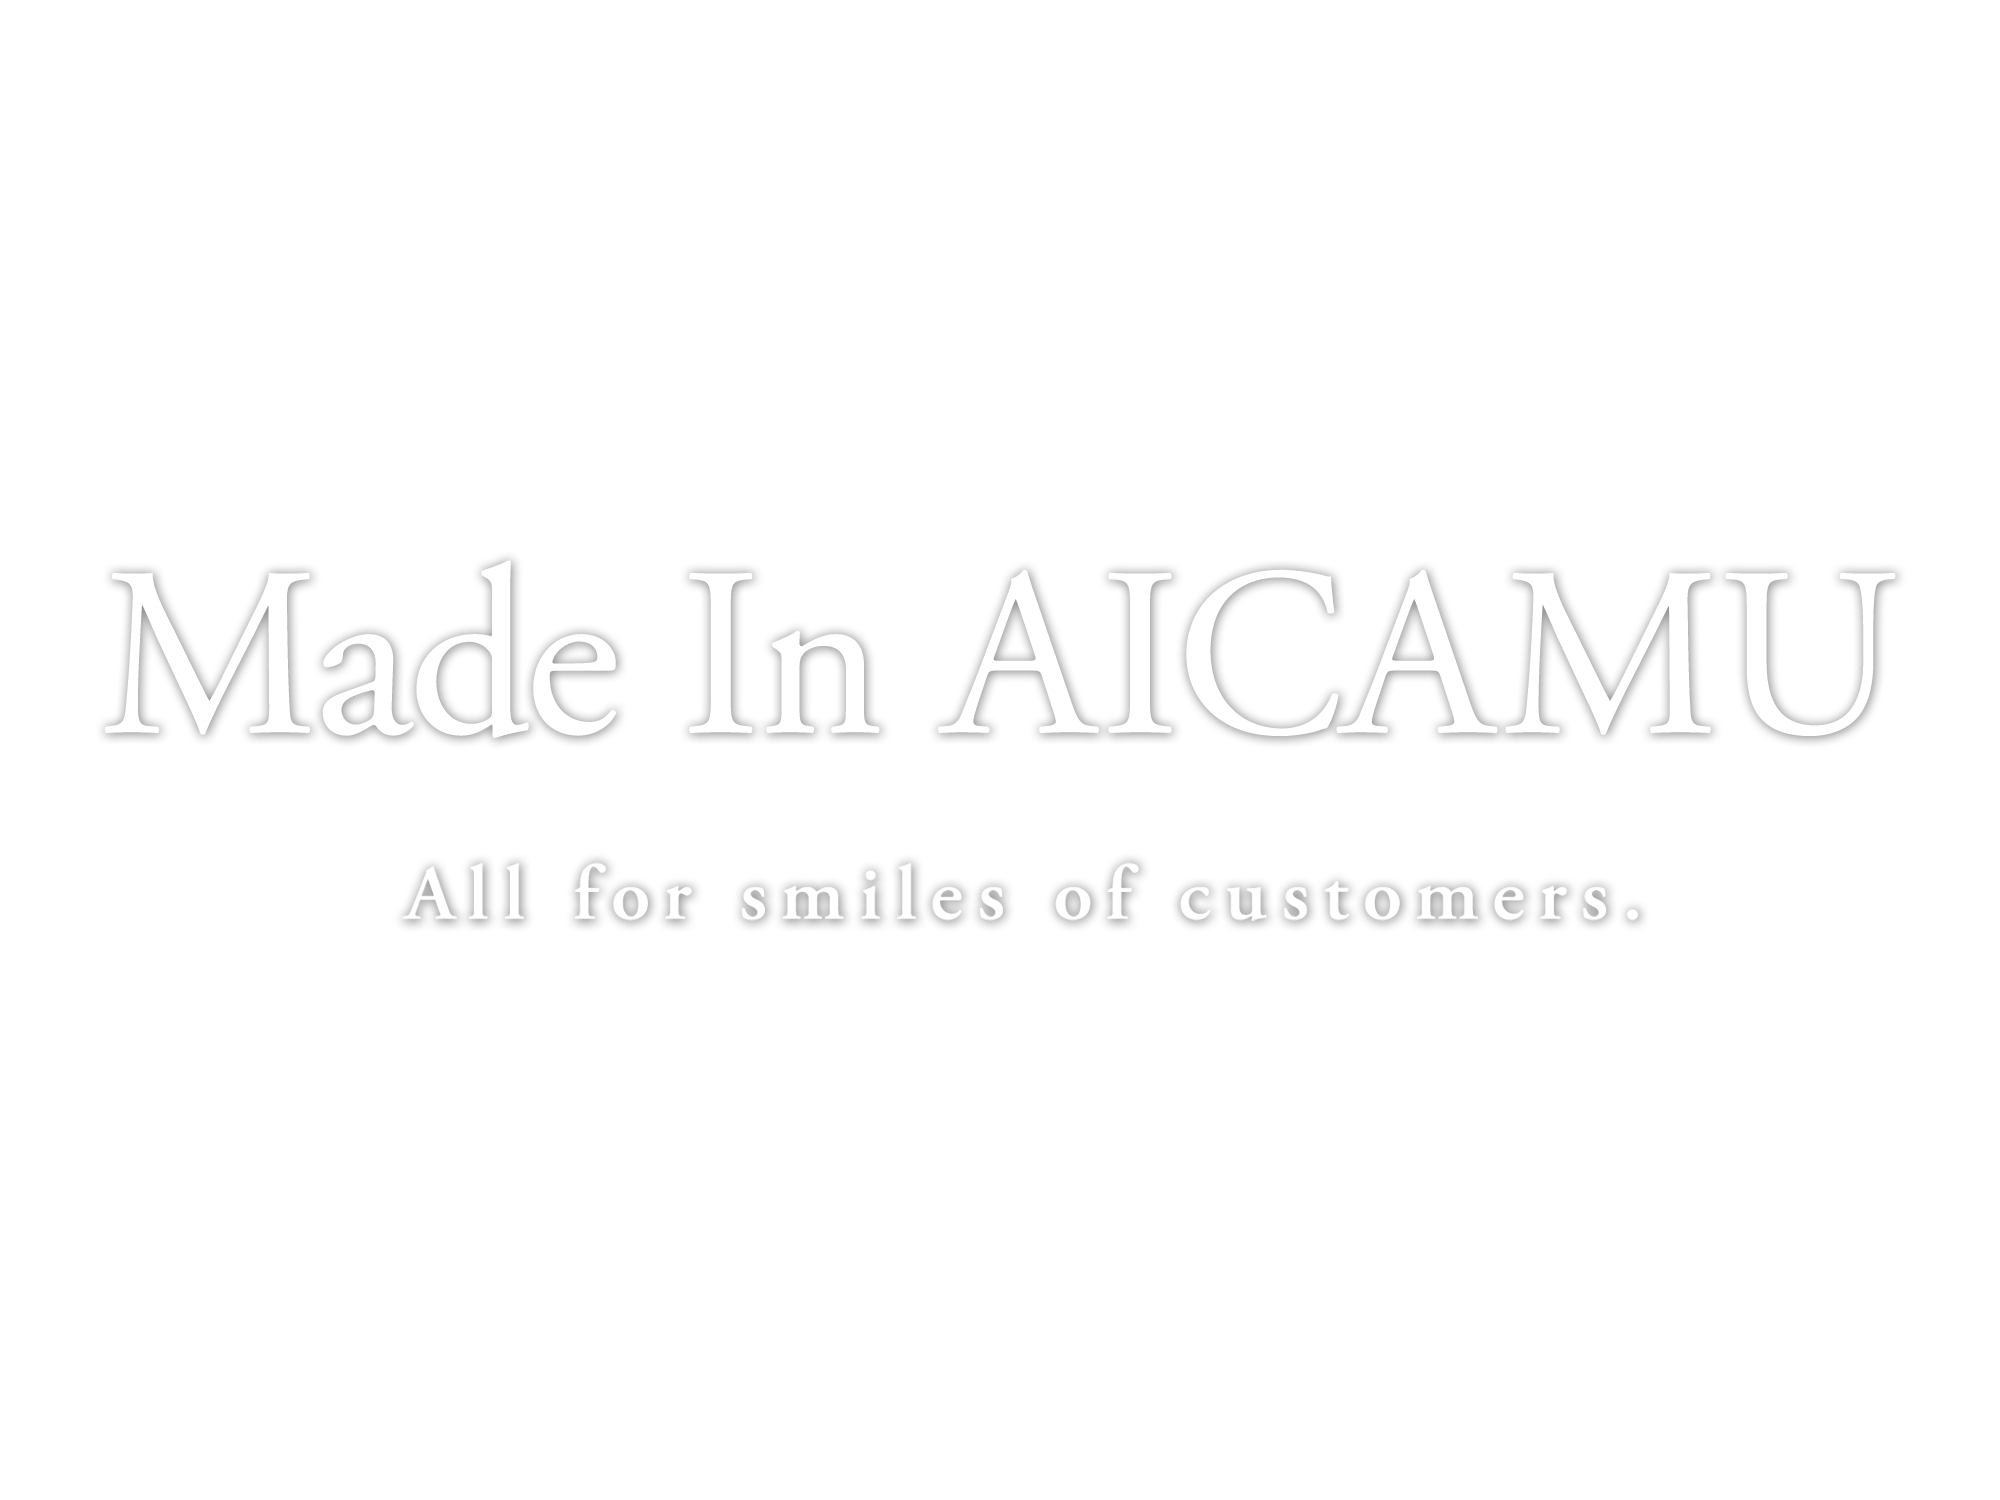 Made in Aicamu